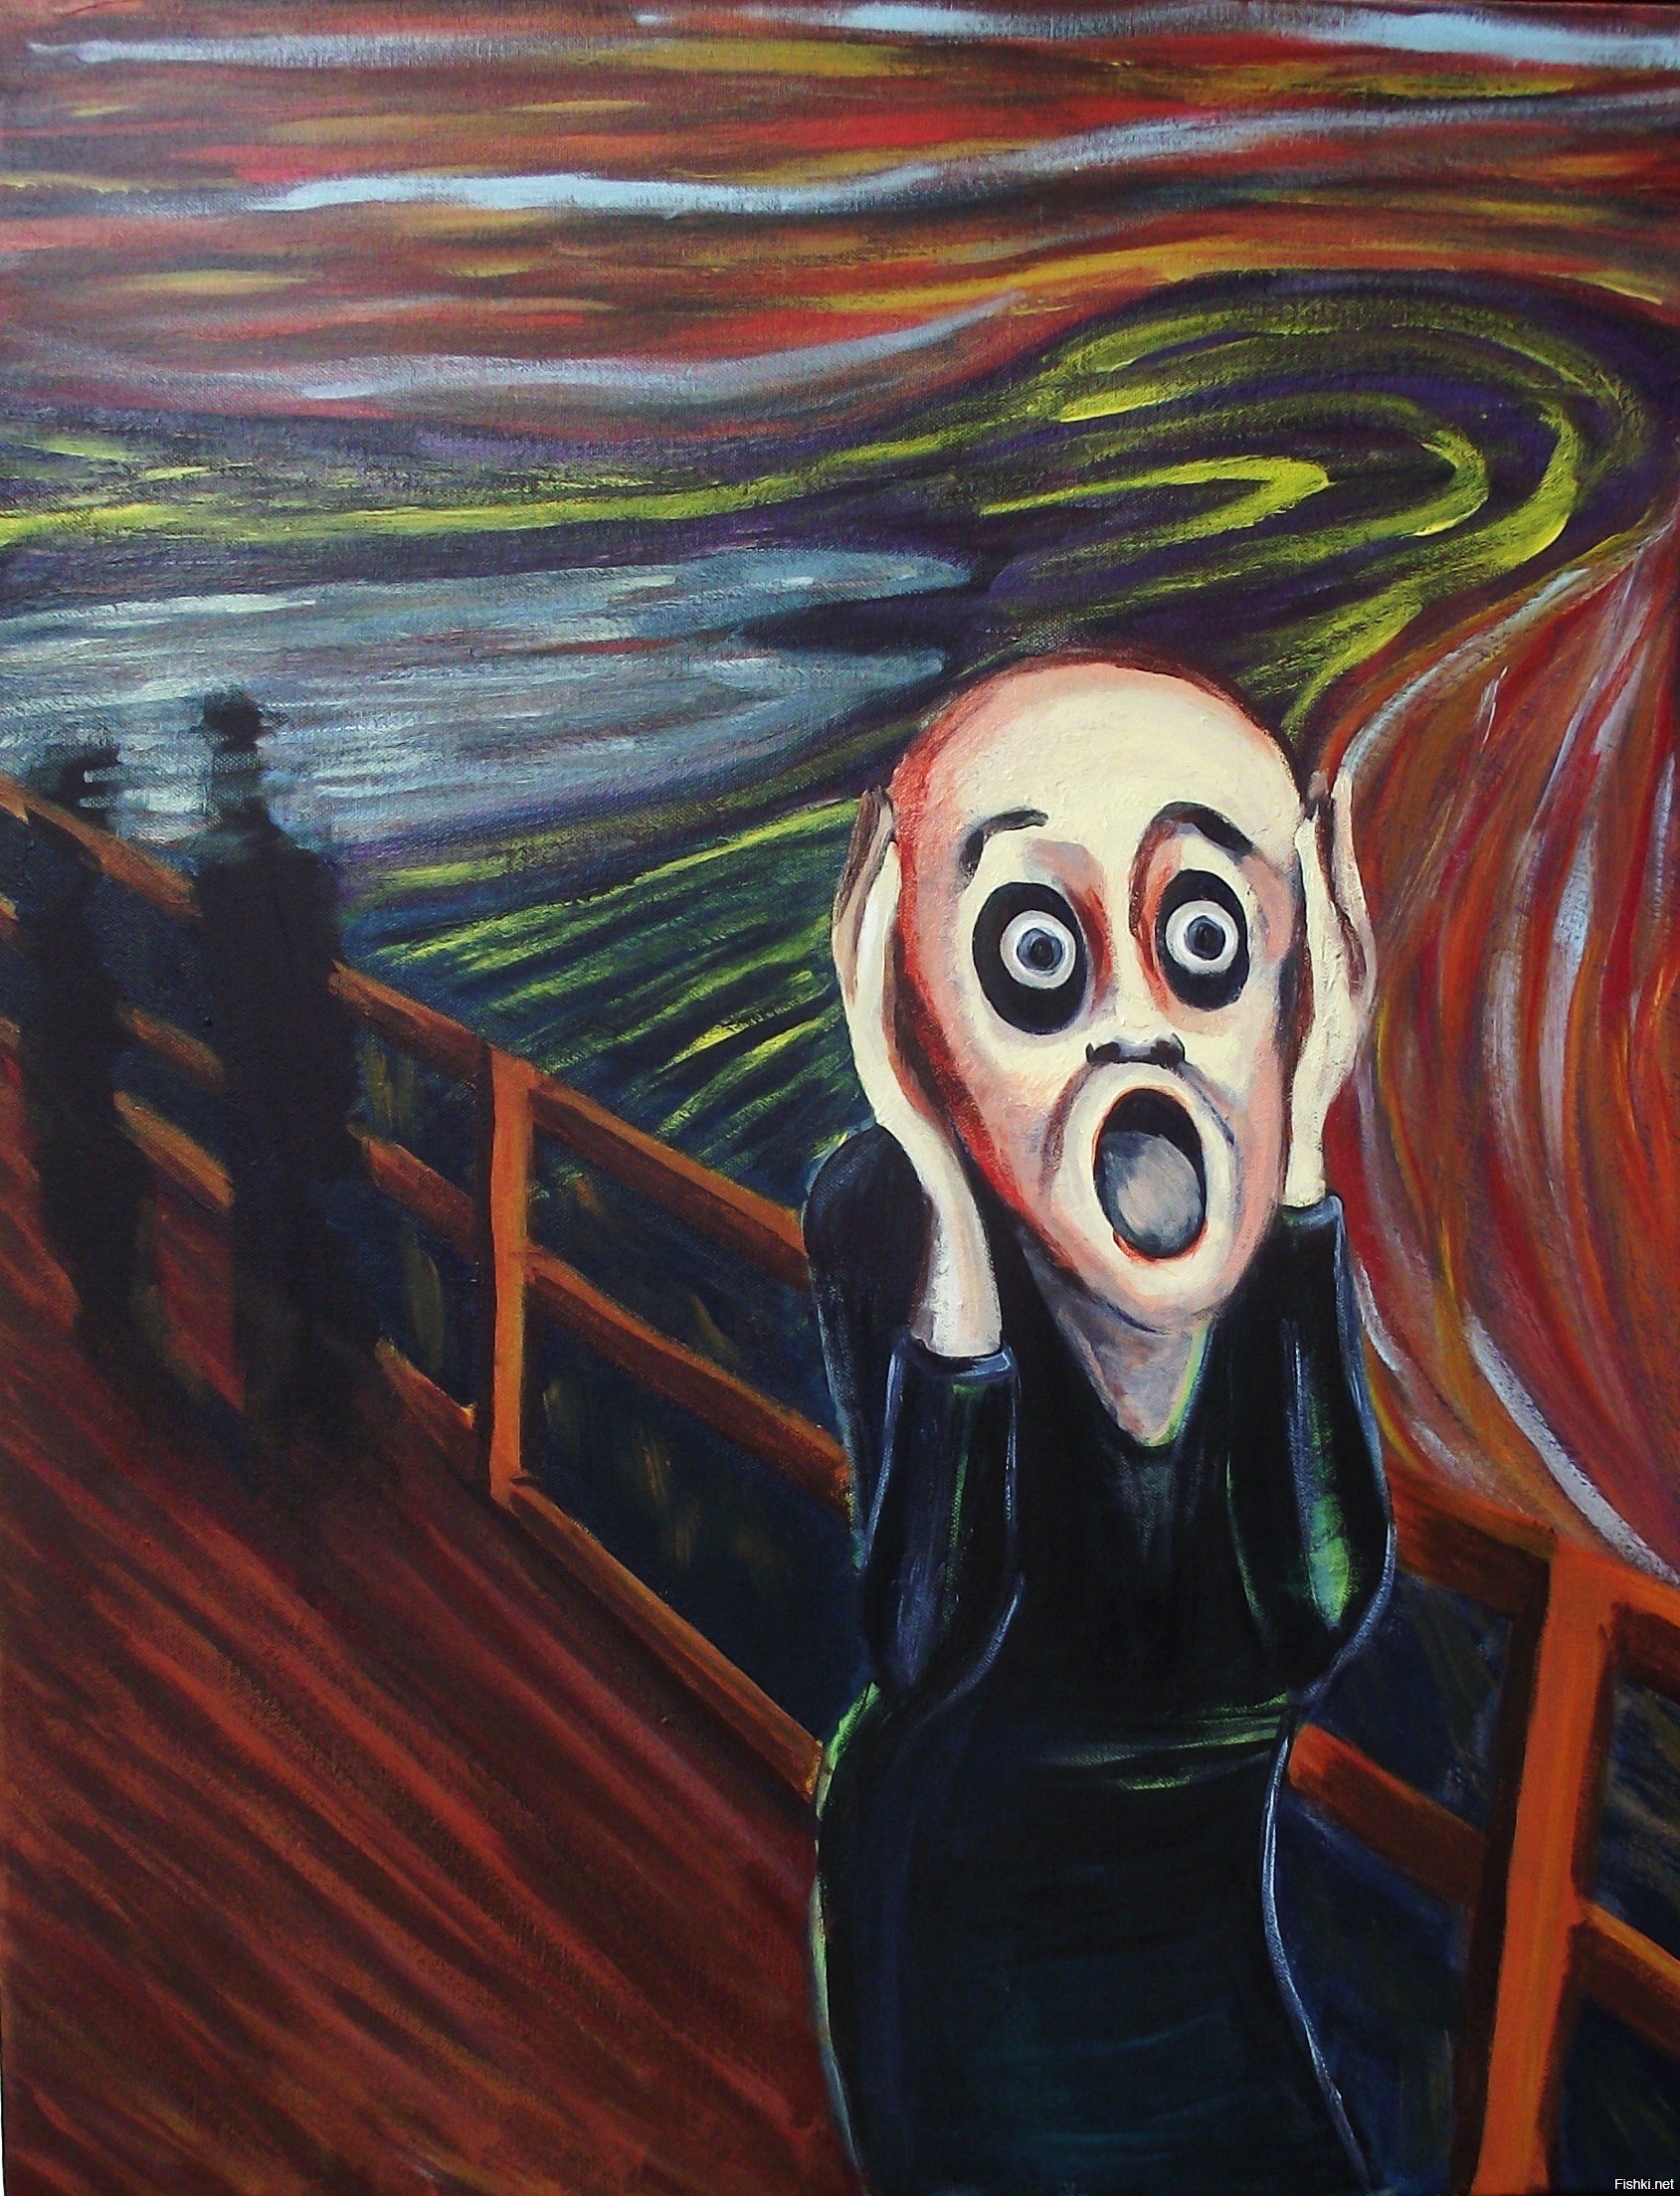 Глупый крик. Ужас картина Мунк. Картина крик Эдварда Мунка.